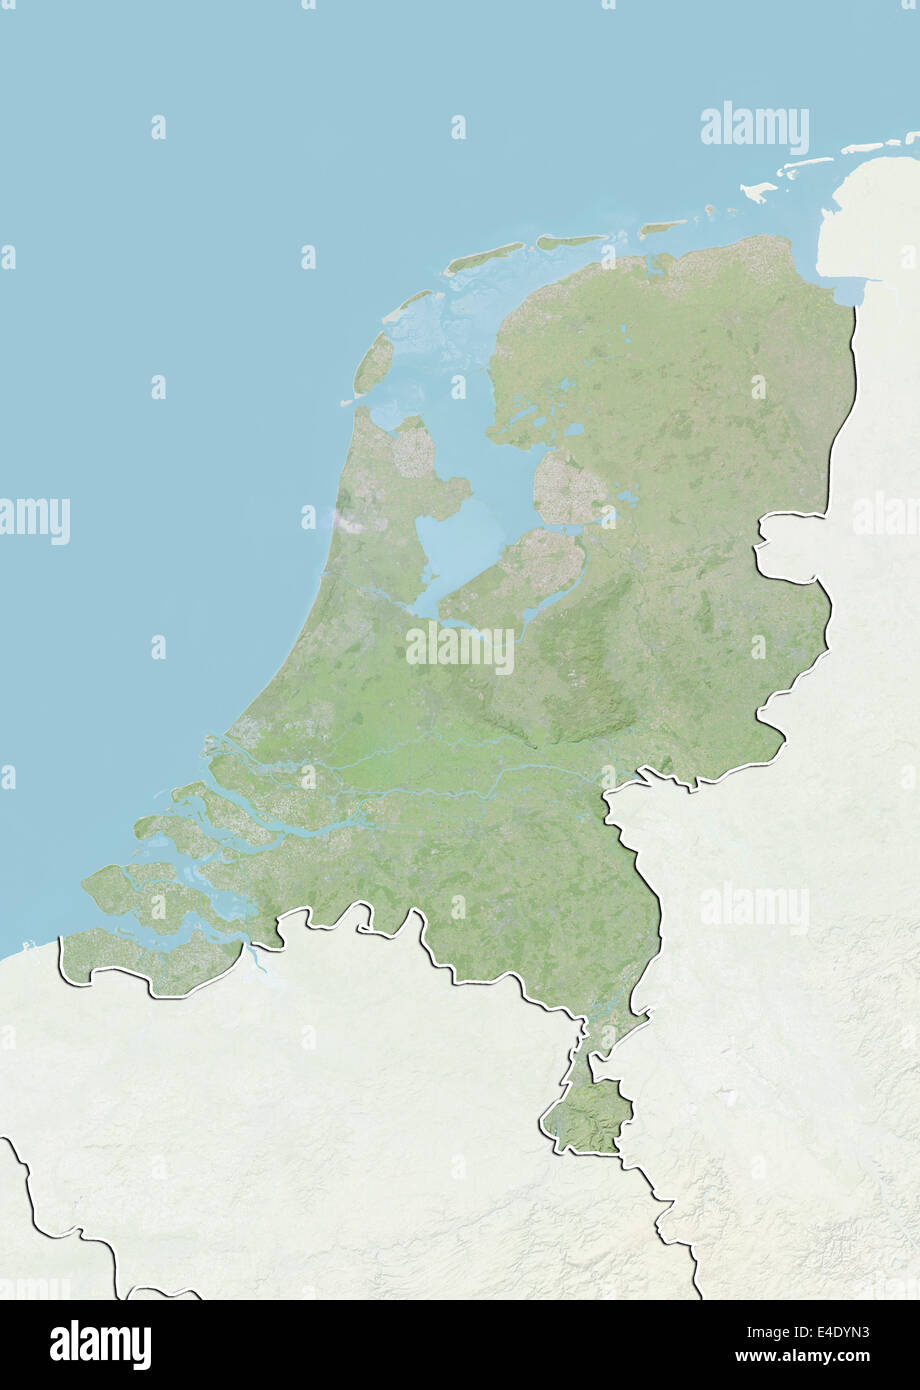 Países Bajos, Mapa en relieve con borde y máscara Foto de stock